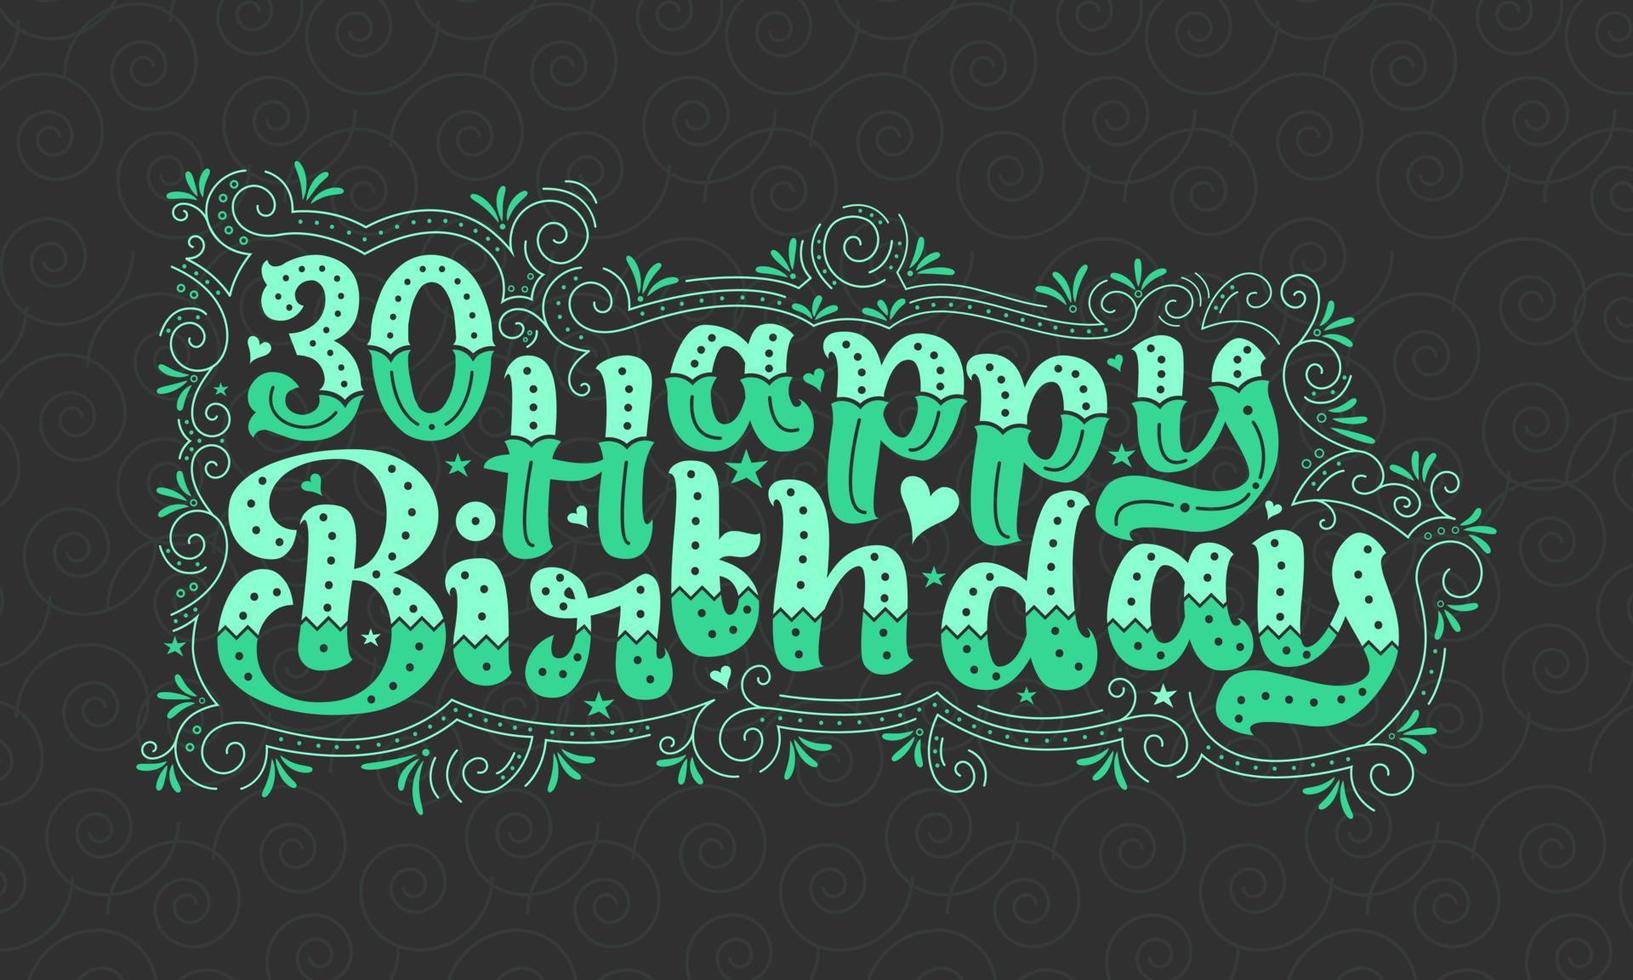 30:e grattis på födelsedagen bokstäver, 30 år födelsedag vacker typografi design med gröna prickar, linjer och blad. vektor